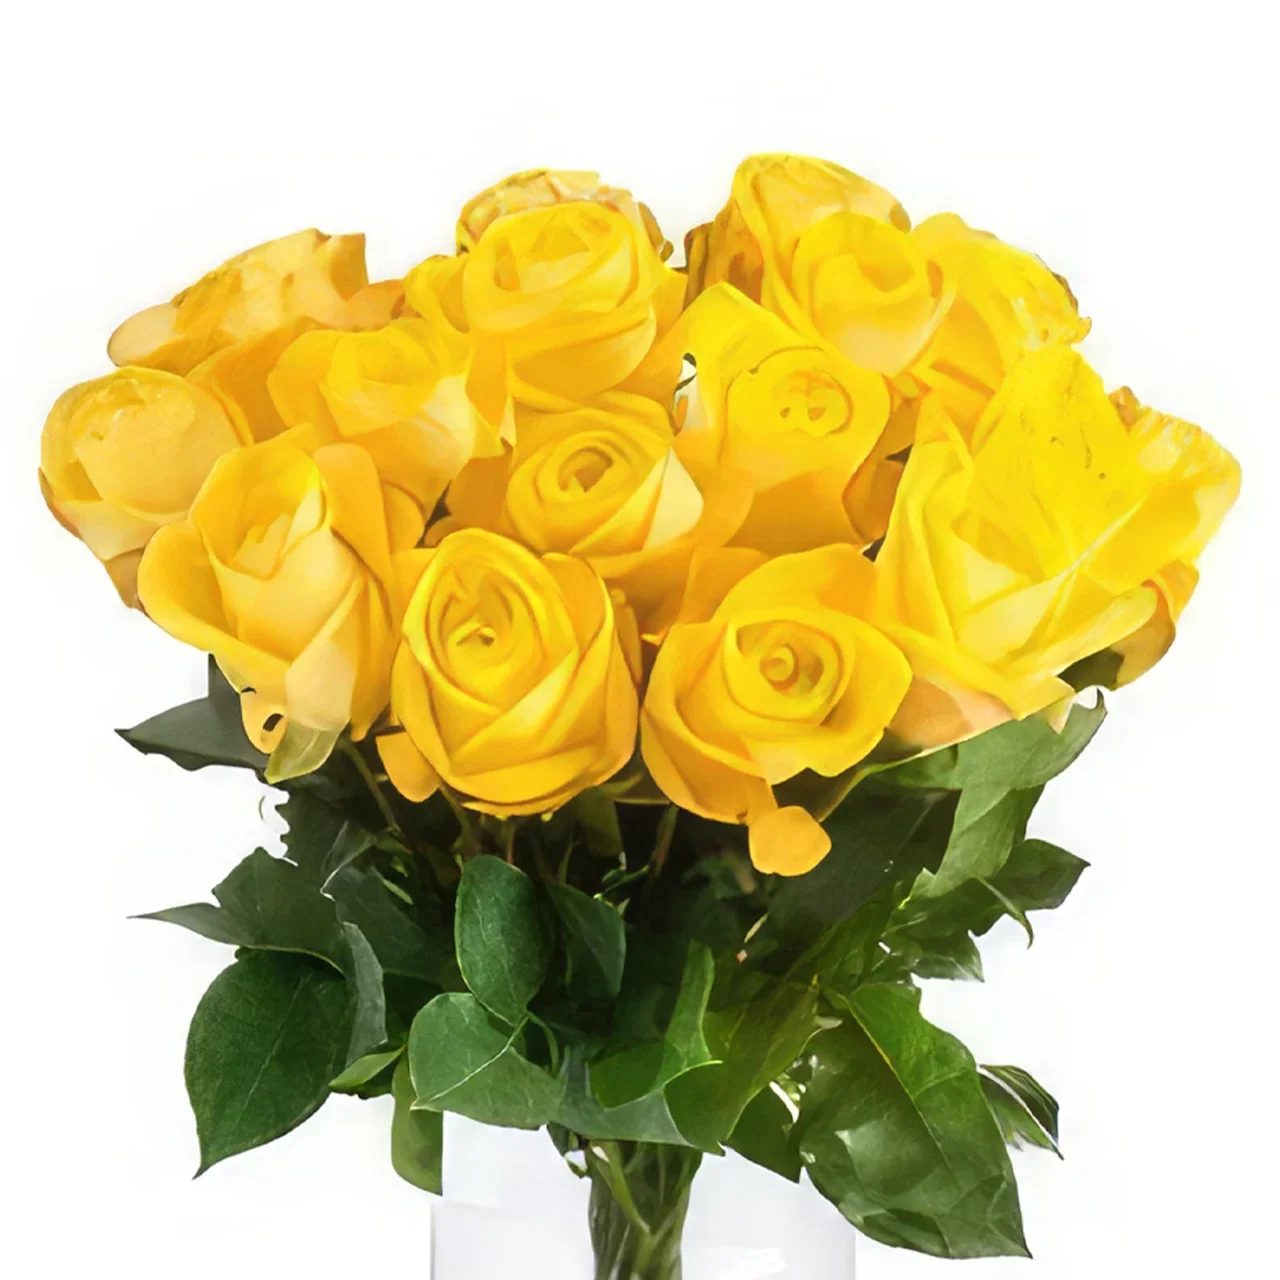 Groningen cvijeća- Buket žutih ruža Cvjetni buket/aranžman